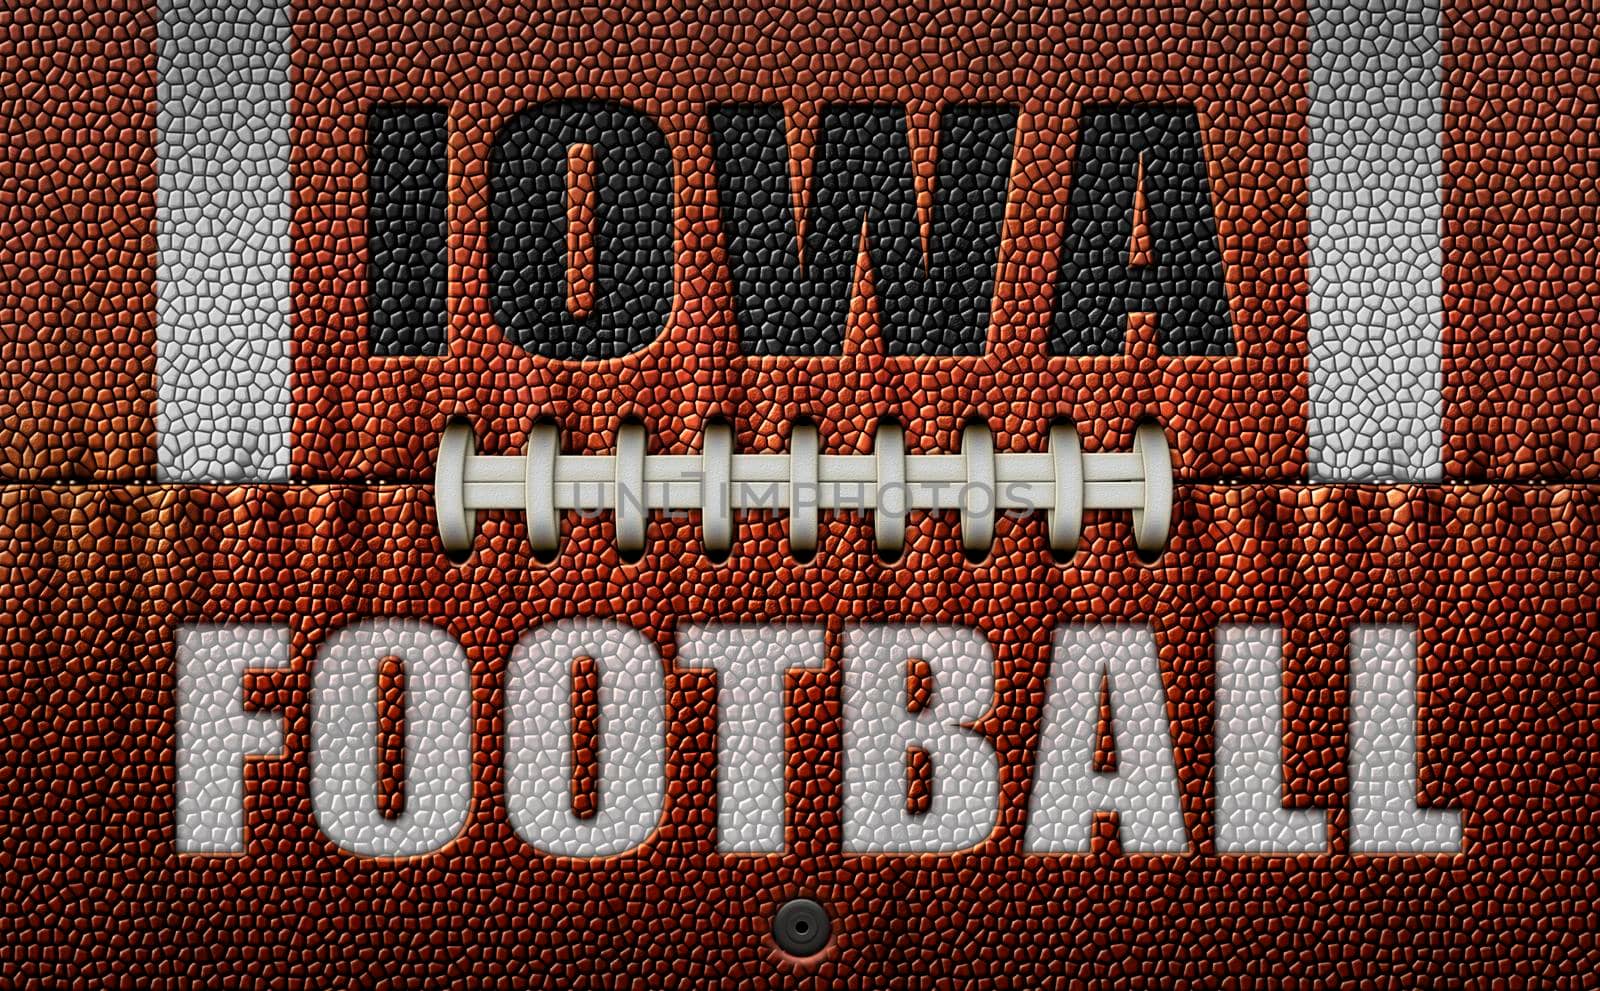 Iowa Football Text on a Flattened Football by jimlarkin